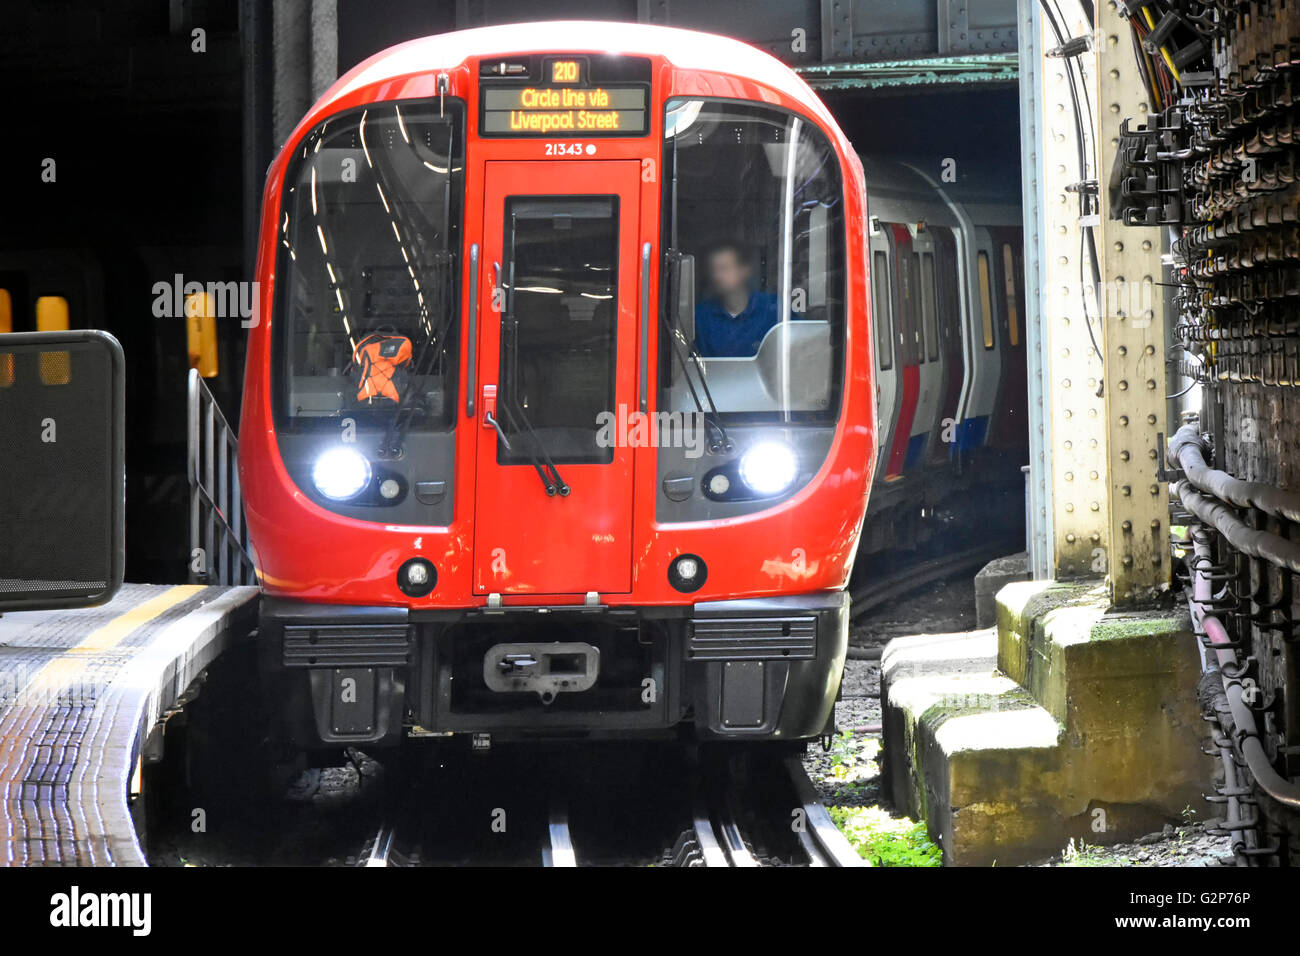 Devant le métro Circle Line de Londres et le conducteur ont caché la face émergeant du tunnel entrant dans la gare plate-forme Angleterre Royaume-Uni Banque D'Images